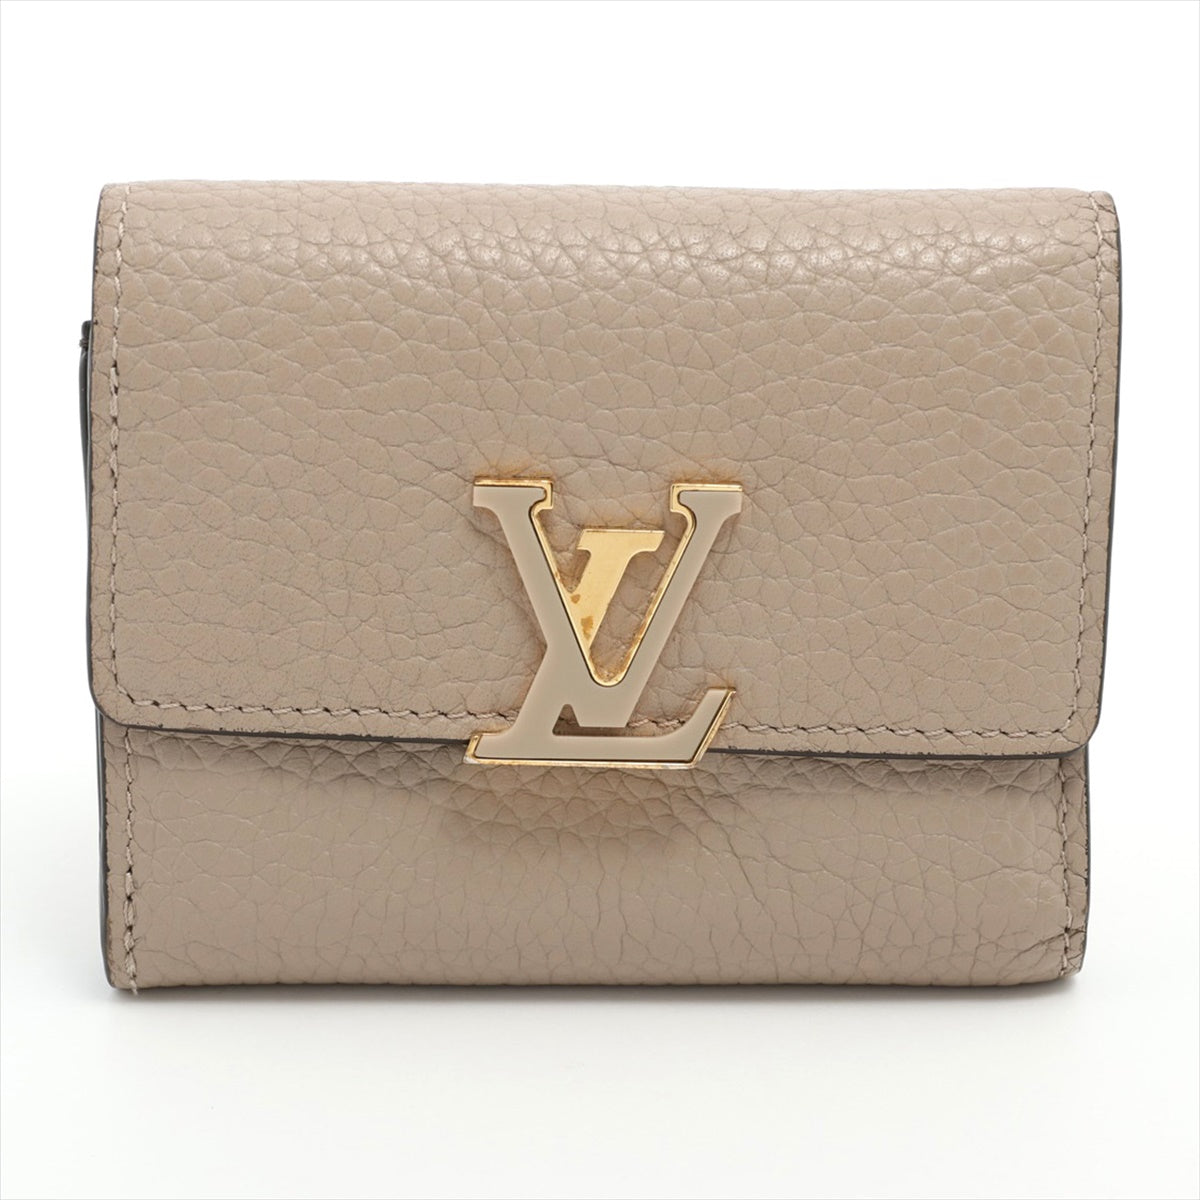 Louis Vuitton Taurillon Portofeuille Capucine XS M68747 Gare Compact Wallet